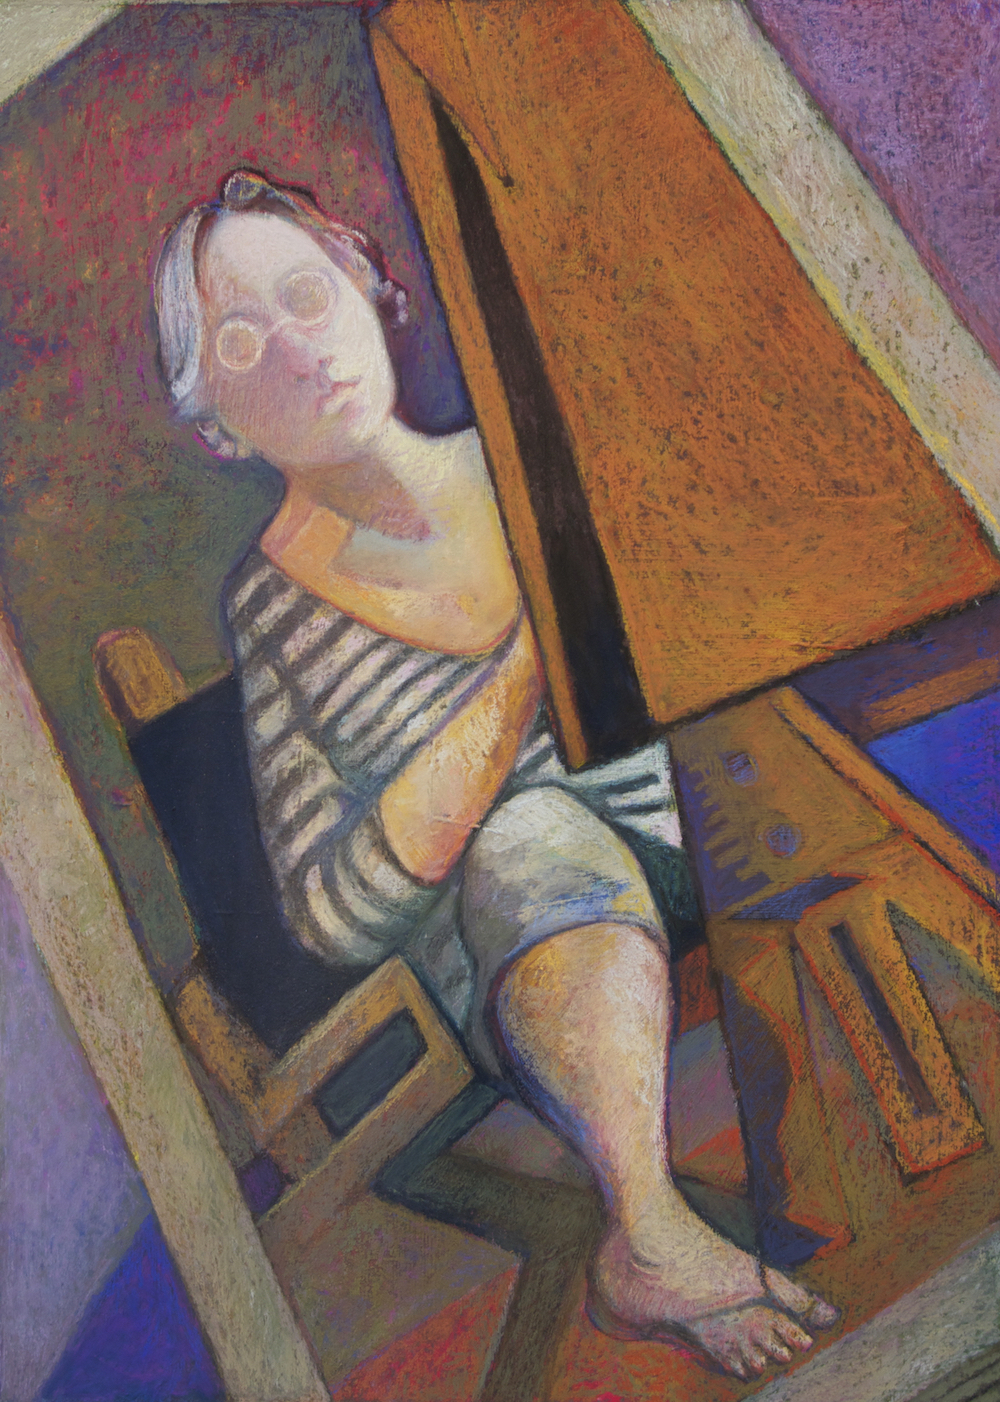 Bernadette deCesare, "My Left Foot," 2012, pastel, 20 x 16 in.